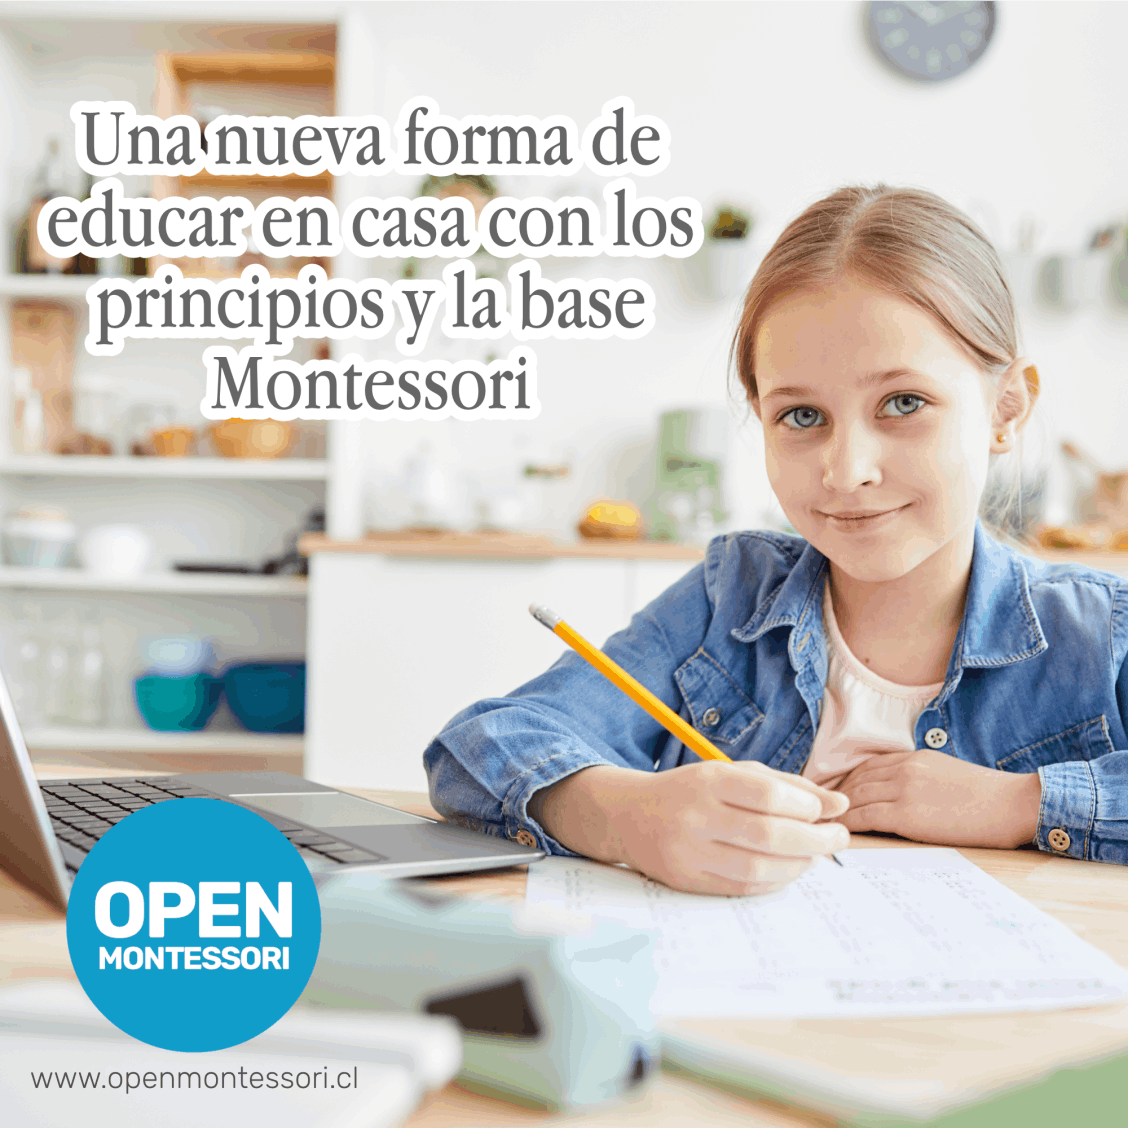 Open Montessori